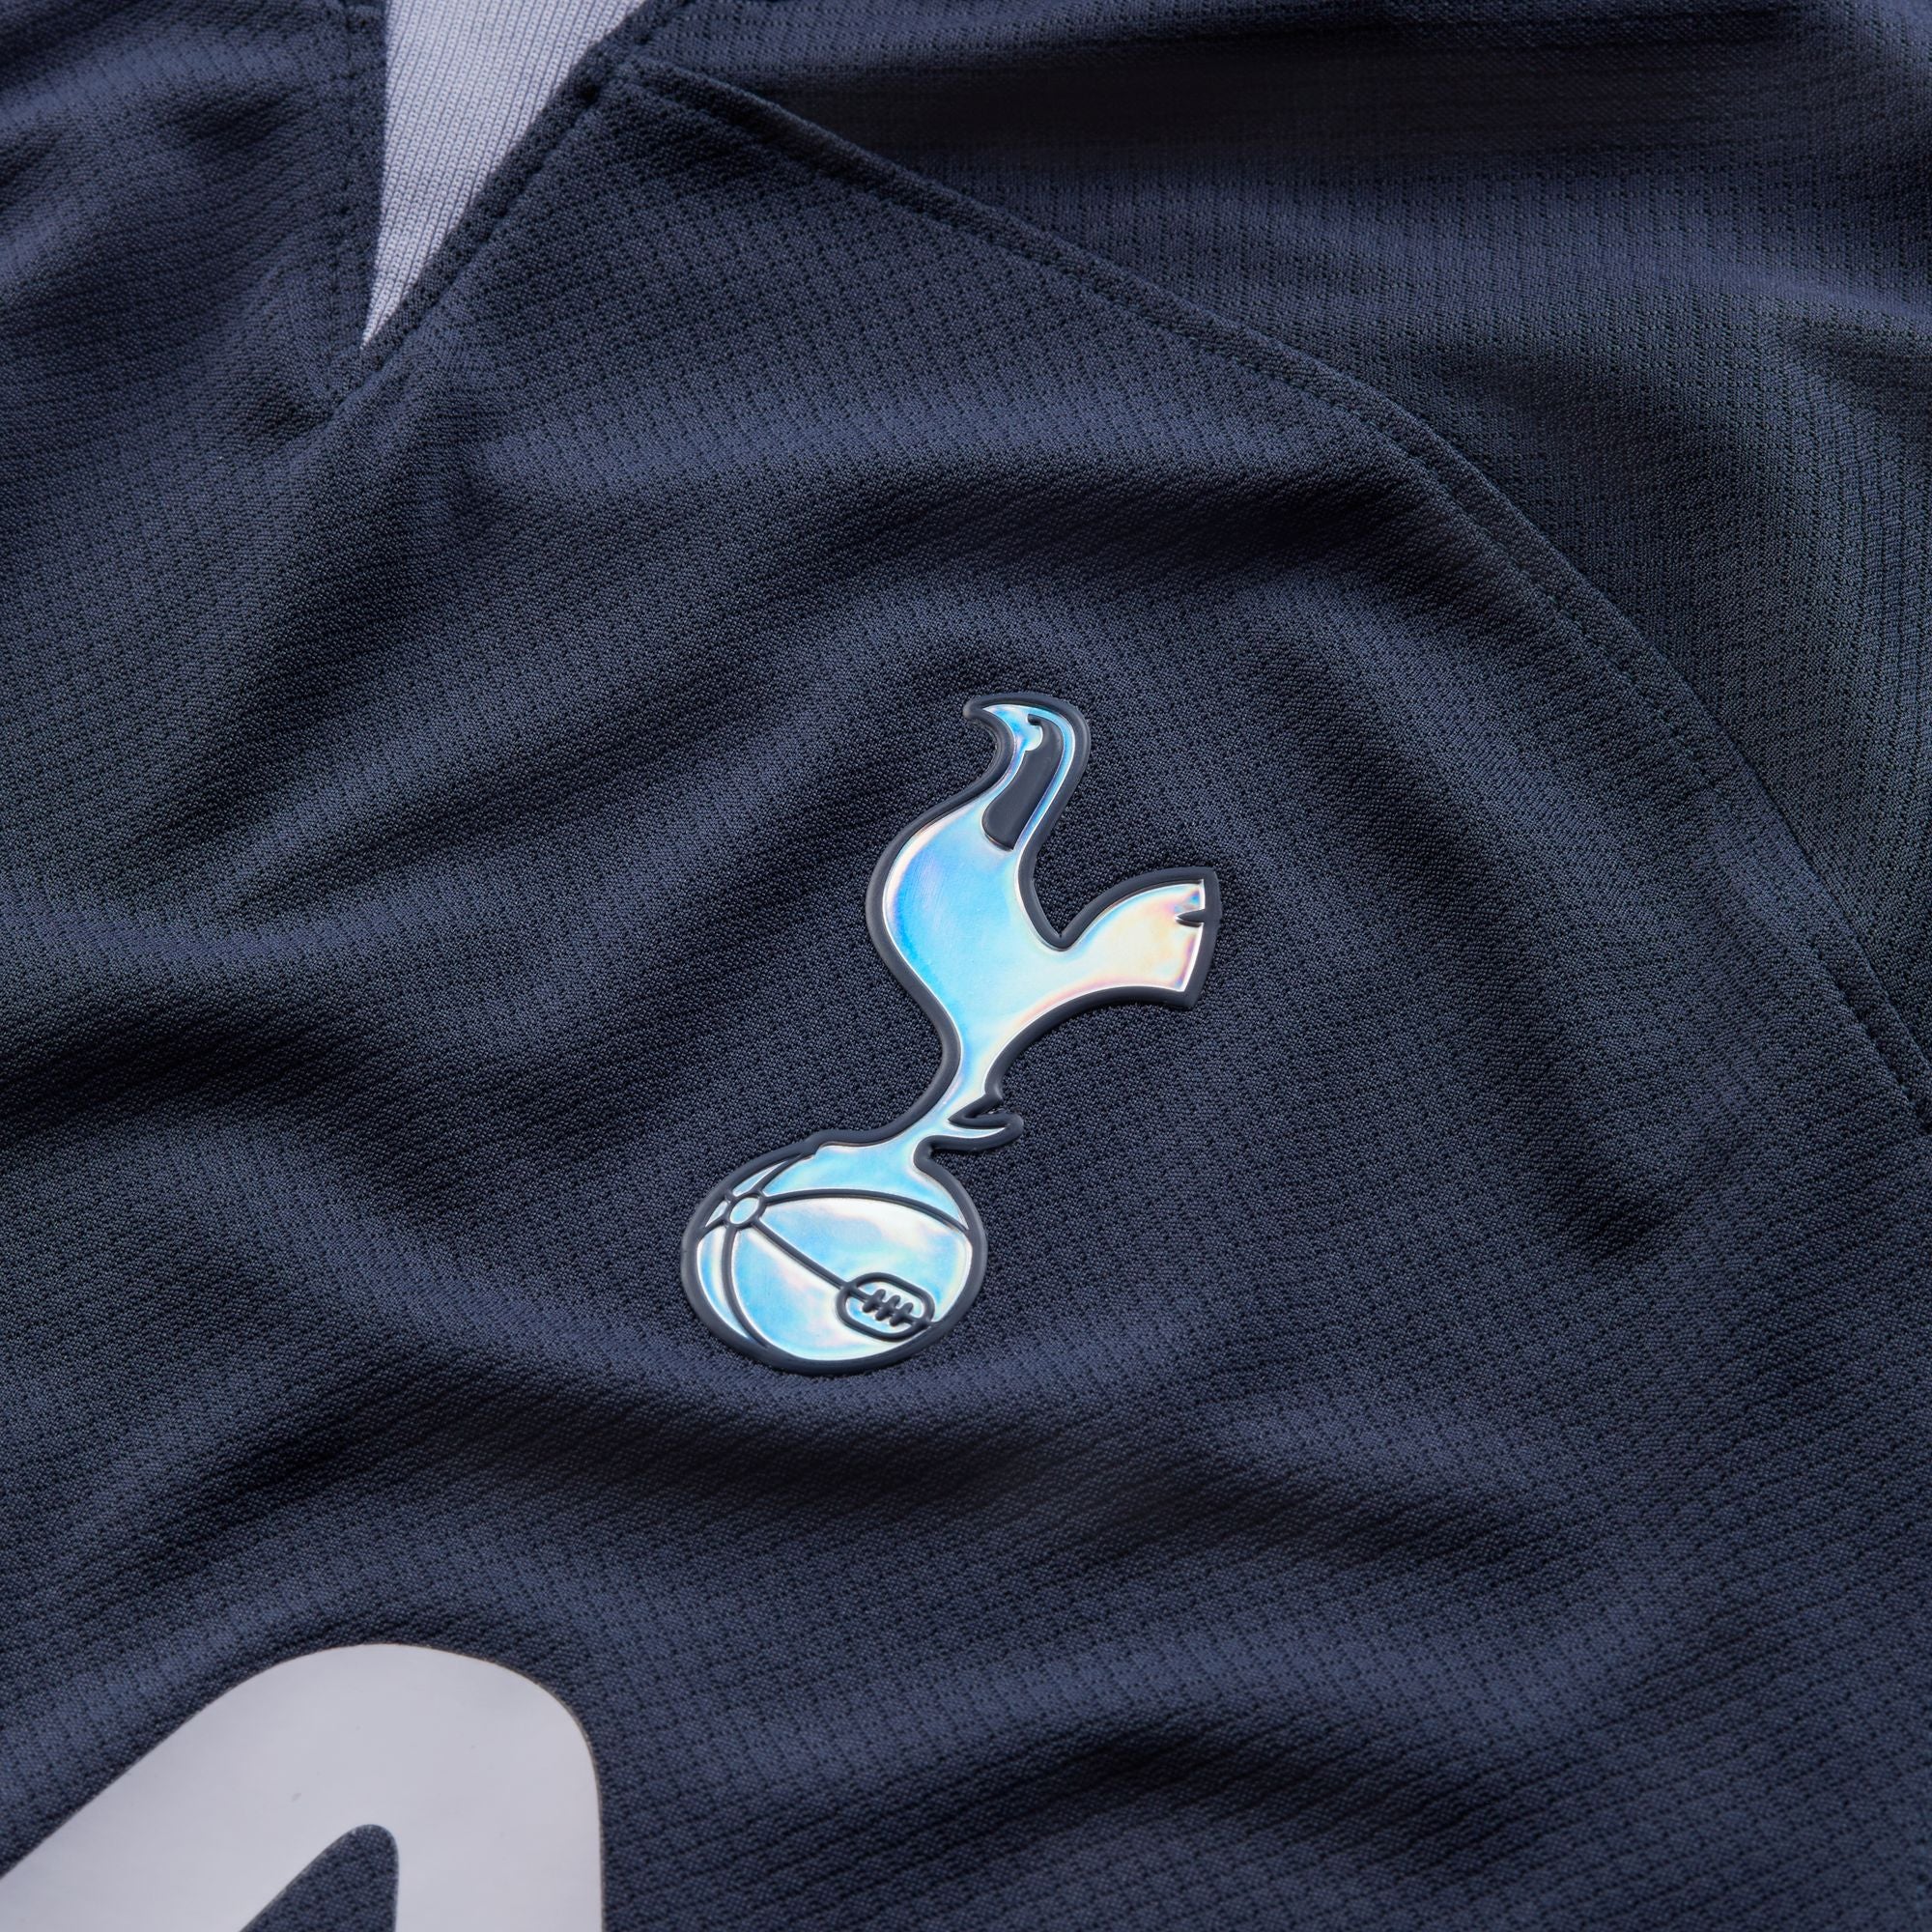 Men's Nike Tottenham Hotspur Third Jersey Blue 2019 2020